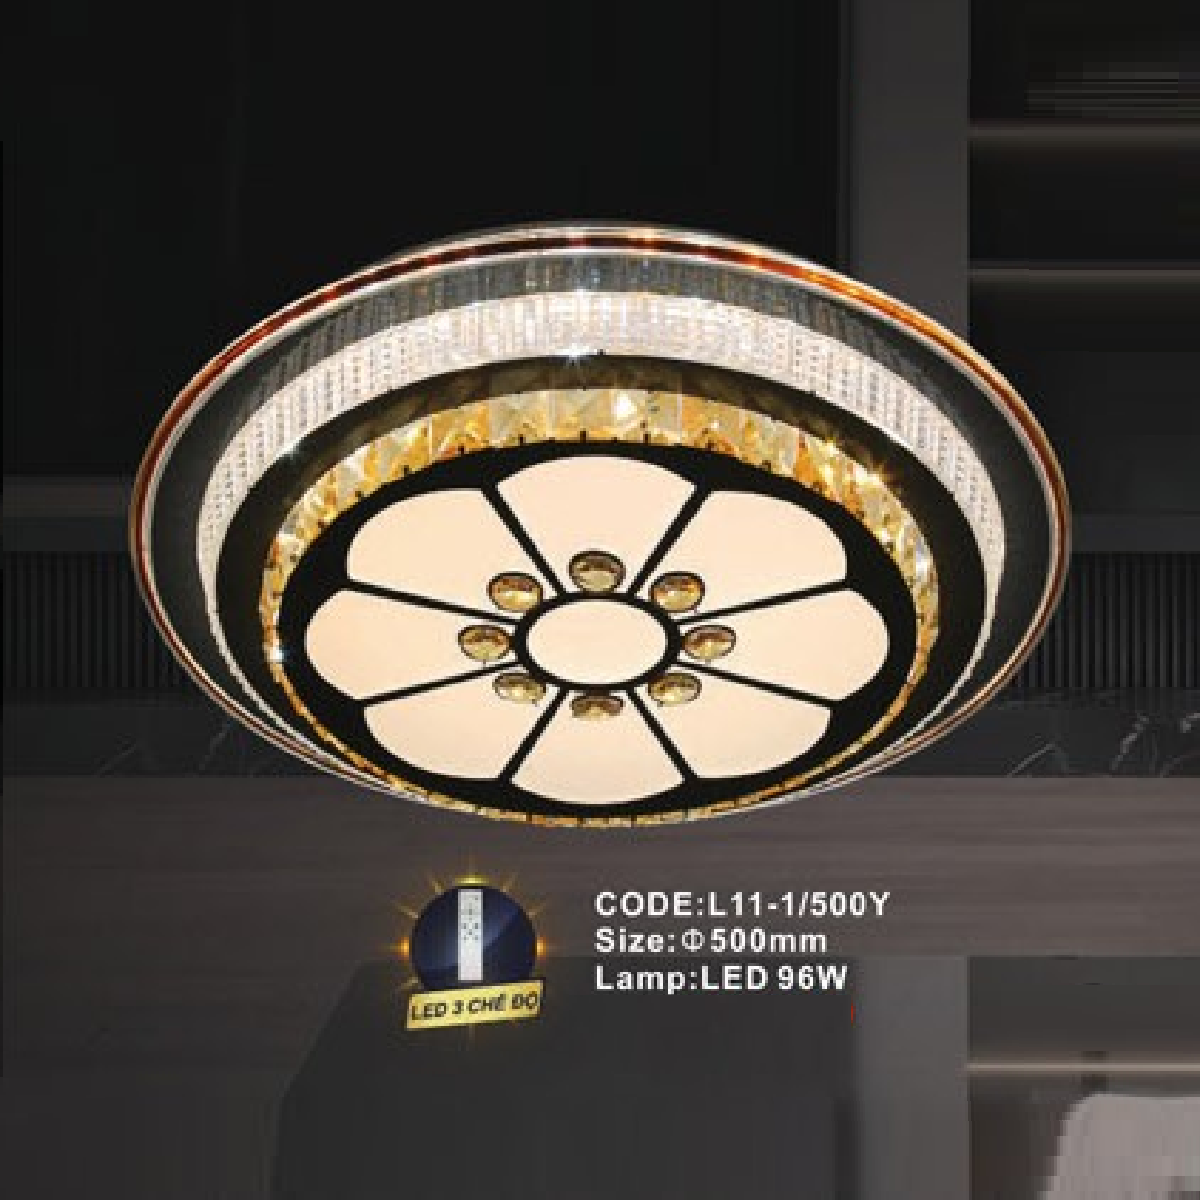 CODE: L11-1/500Y: Đèn áp trần LED - KT: Ø500mm - Đèn LED 96W ánh sáng đổi 3 màu